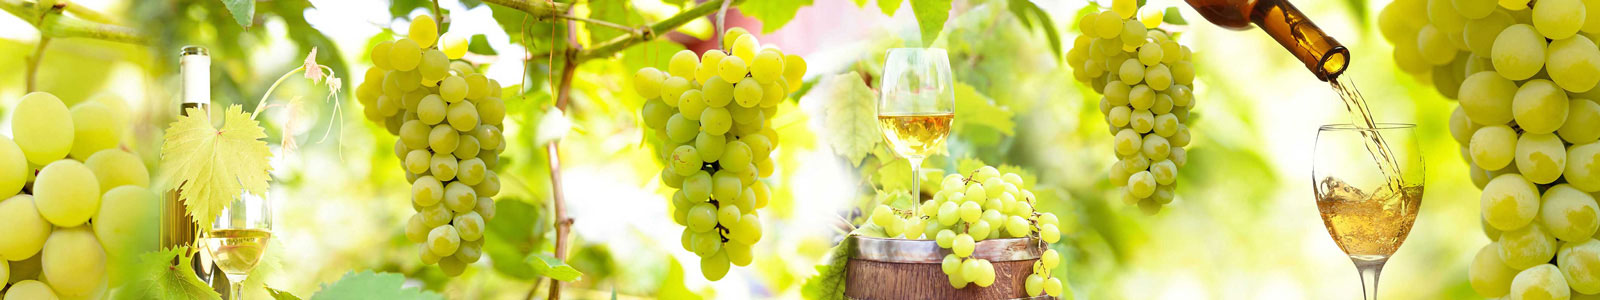 №6242 - Зеленый виноград в солнечный день